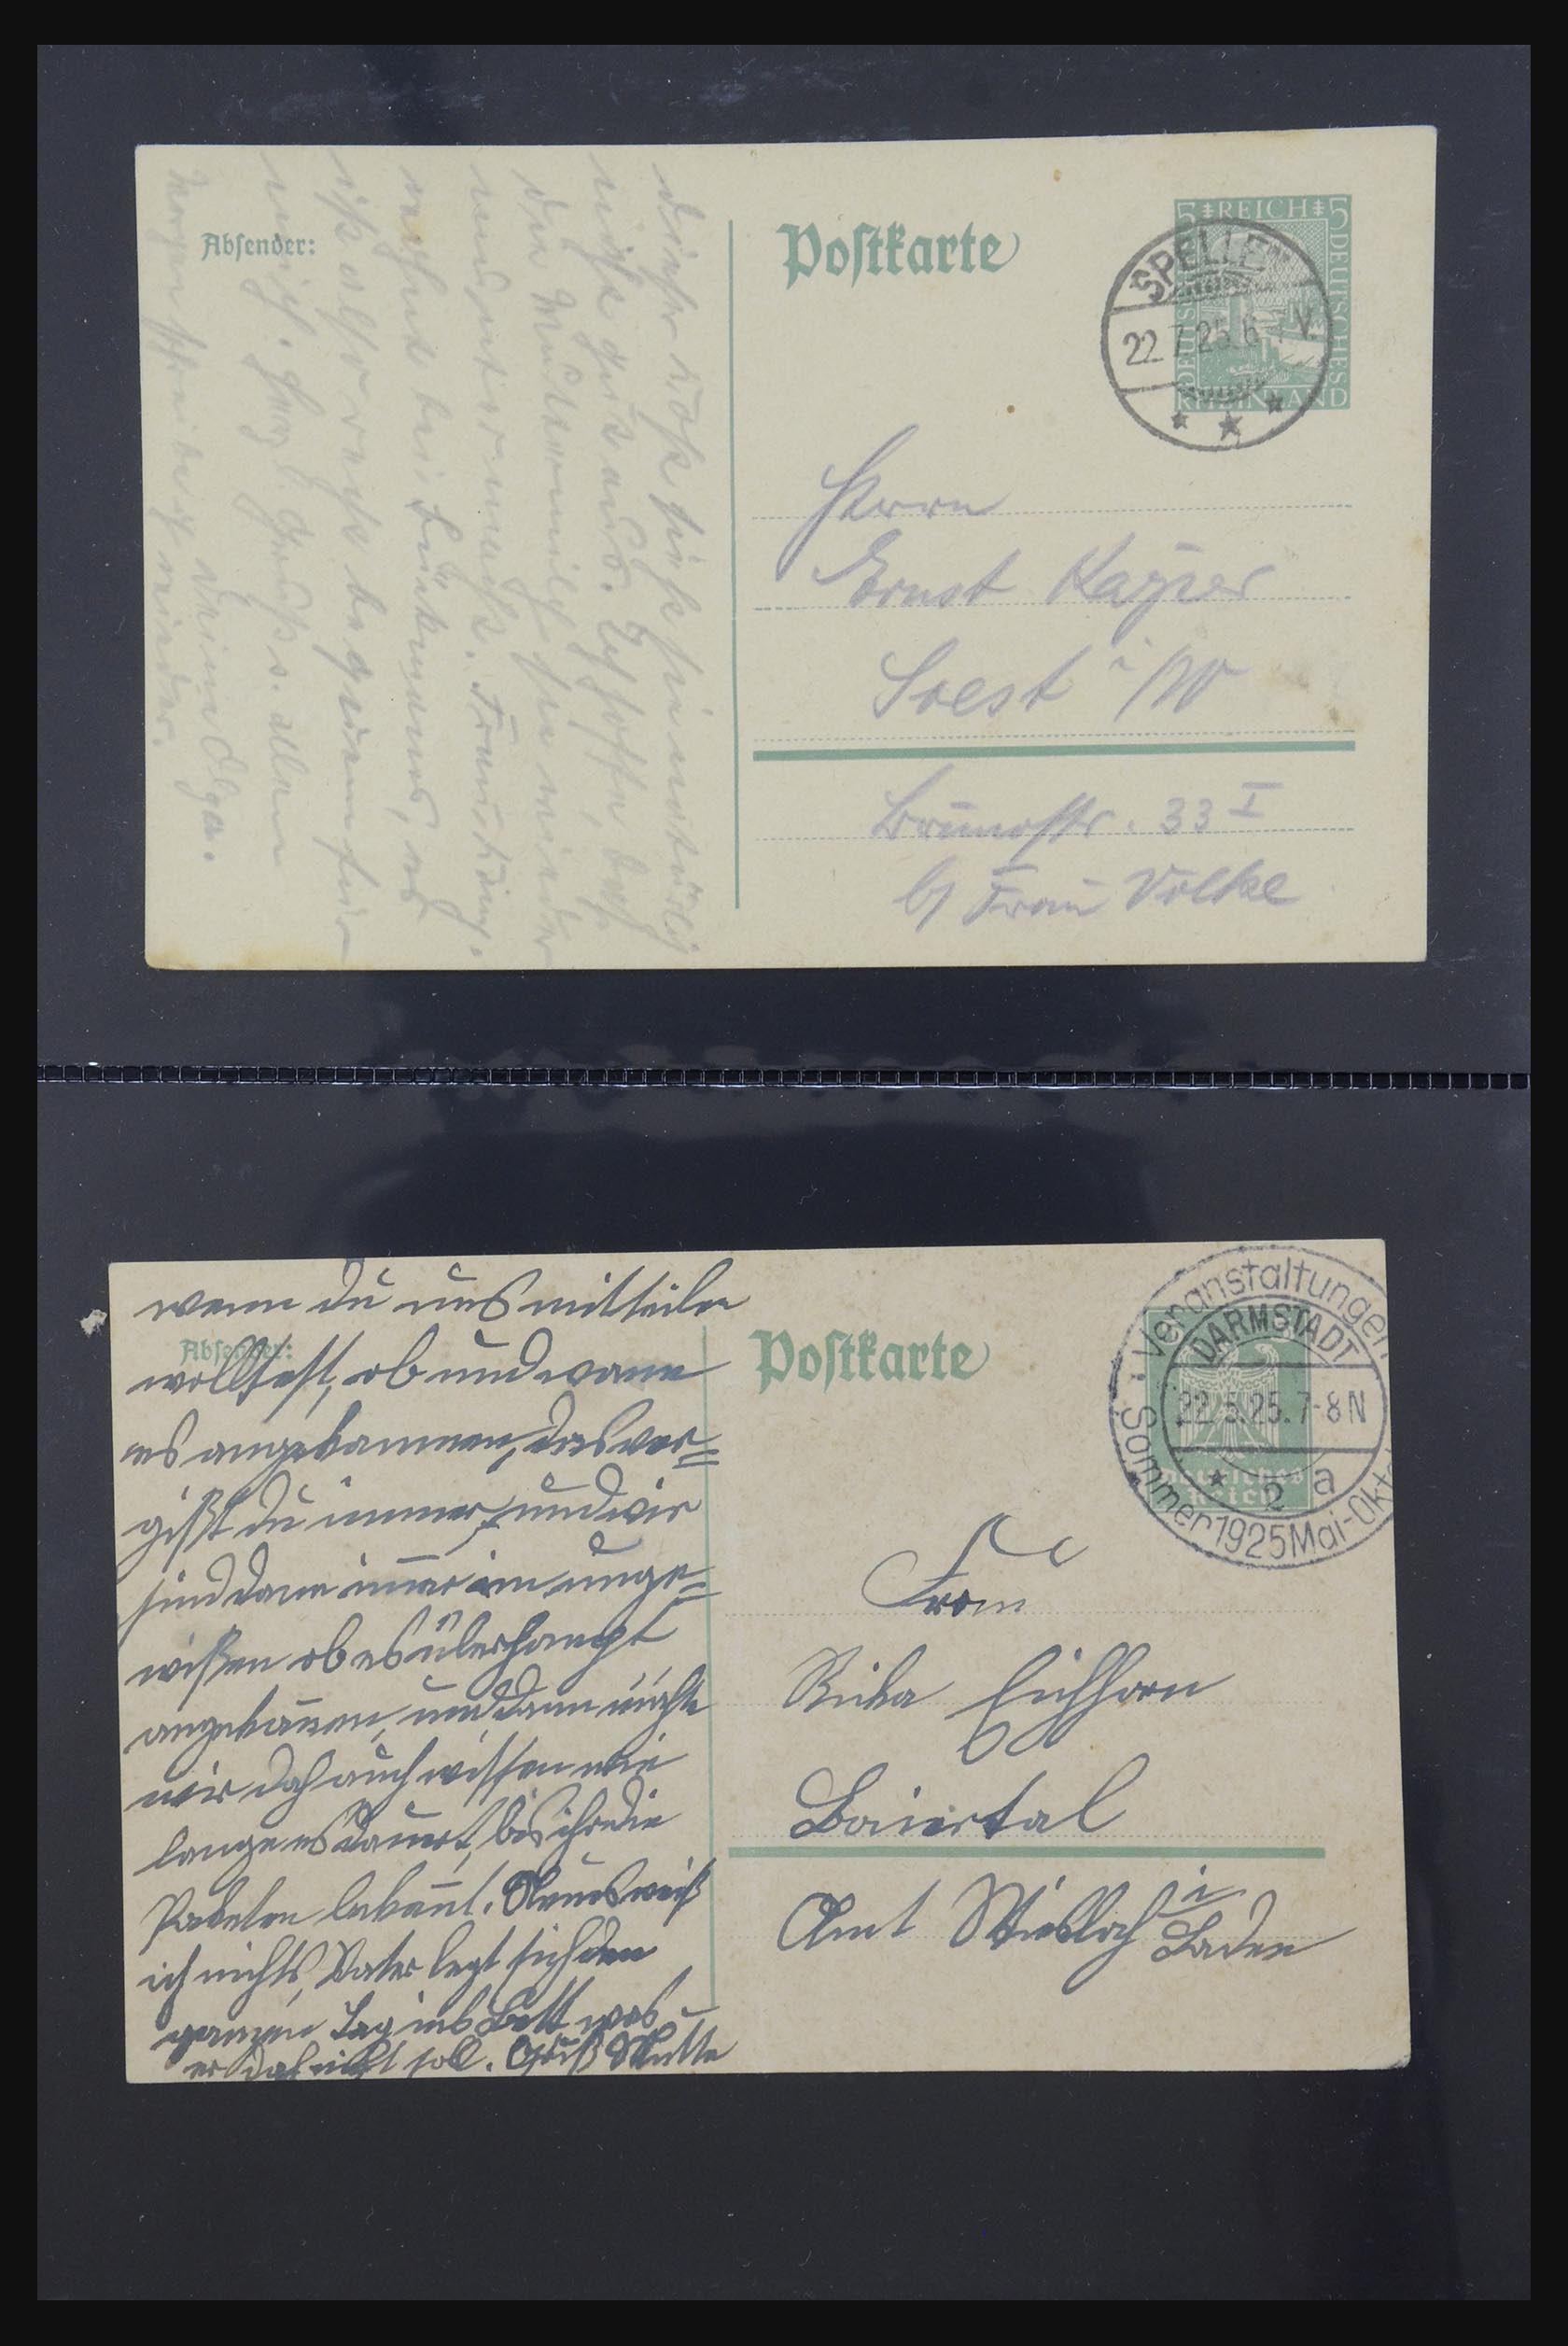 31952 444 - 31952 German Reich cards.